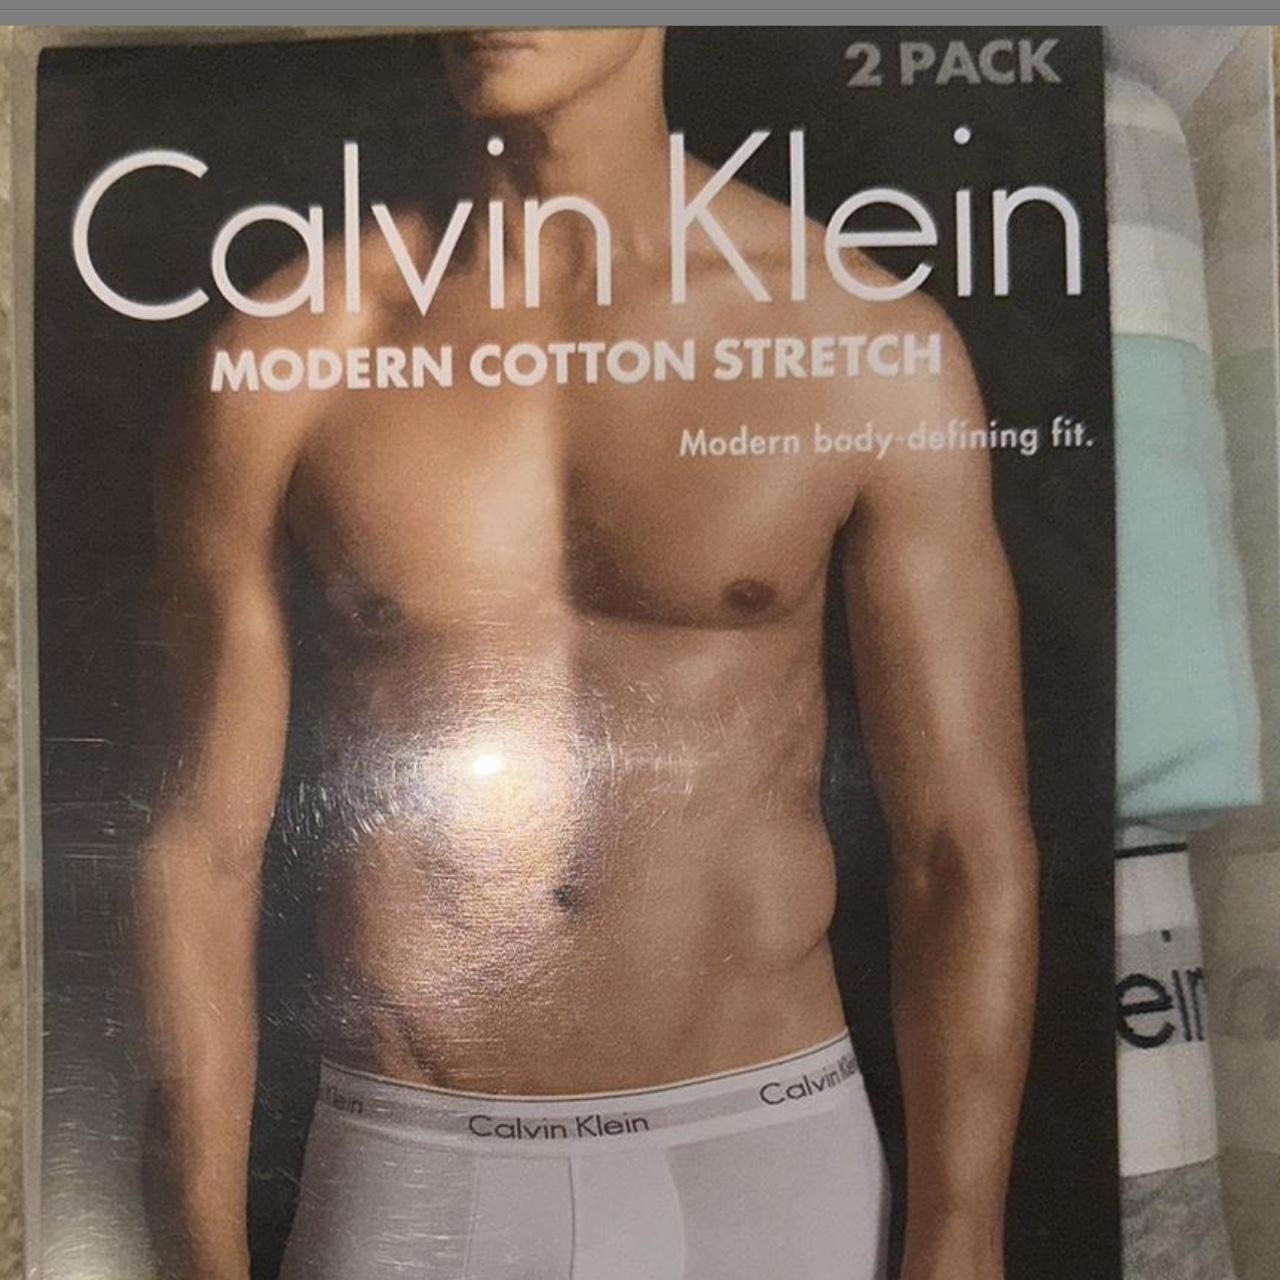 Calvin Klein sleep set size Large #matchingset - Depop